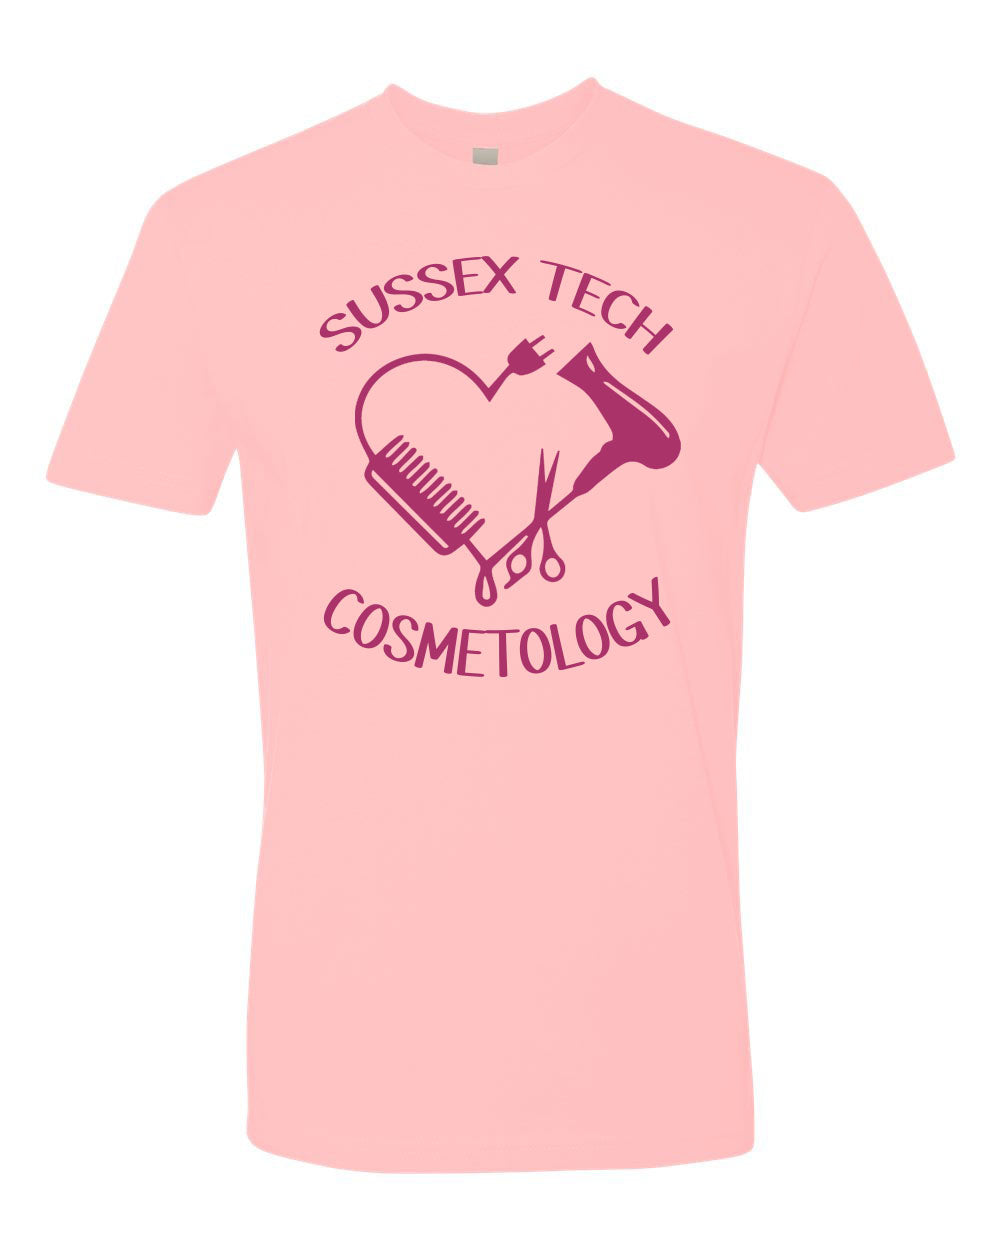 Sussex Tech Cosmetology Design 2 T-Shirt